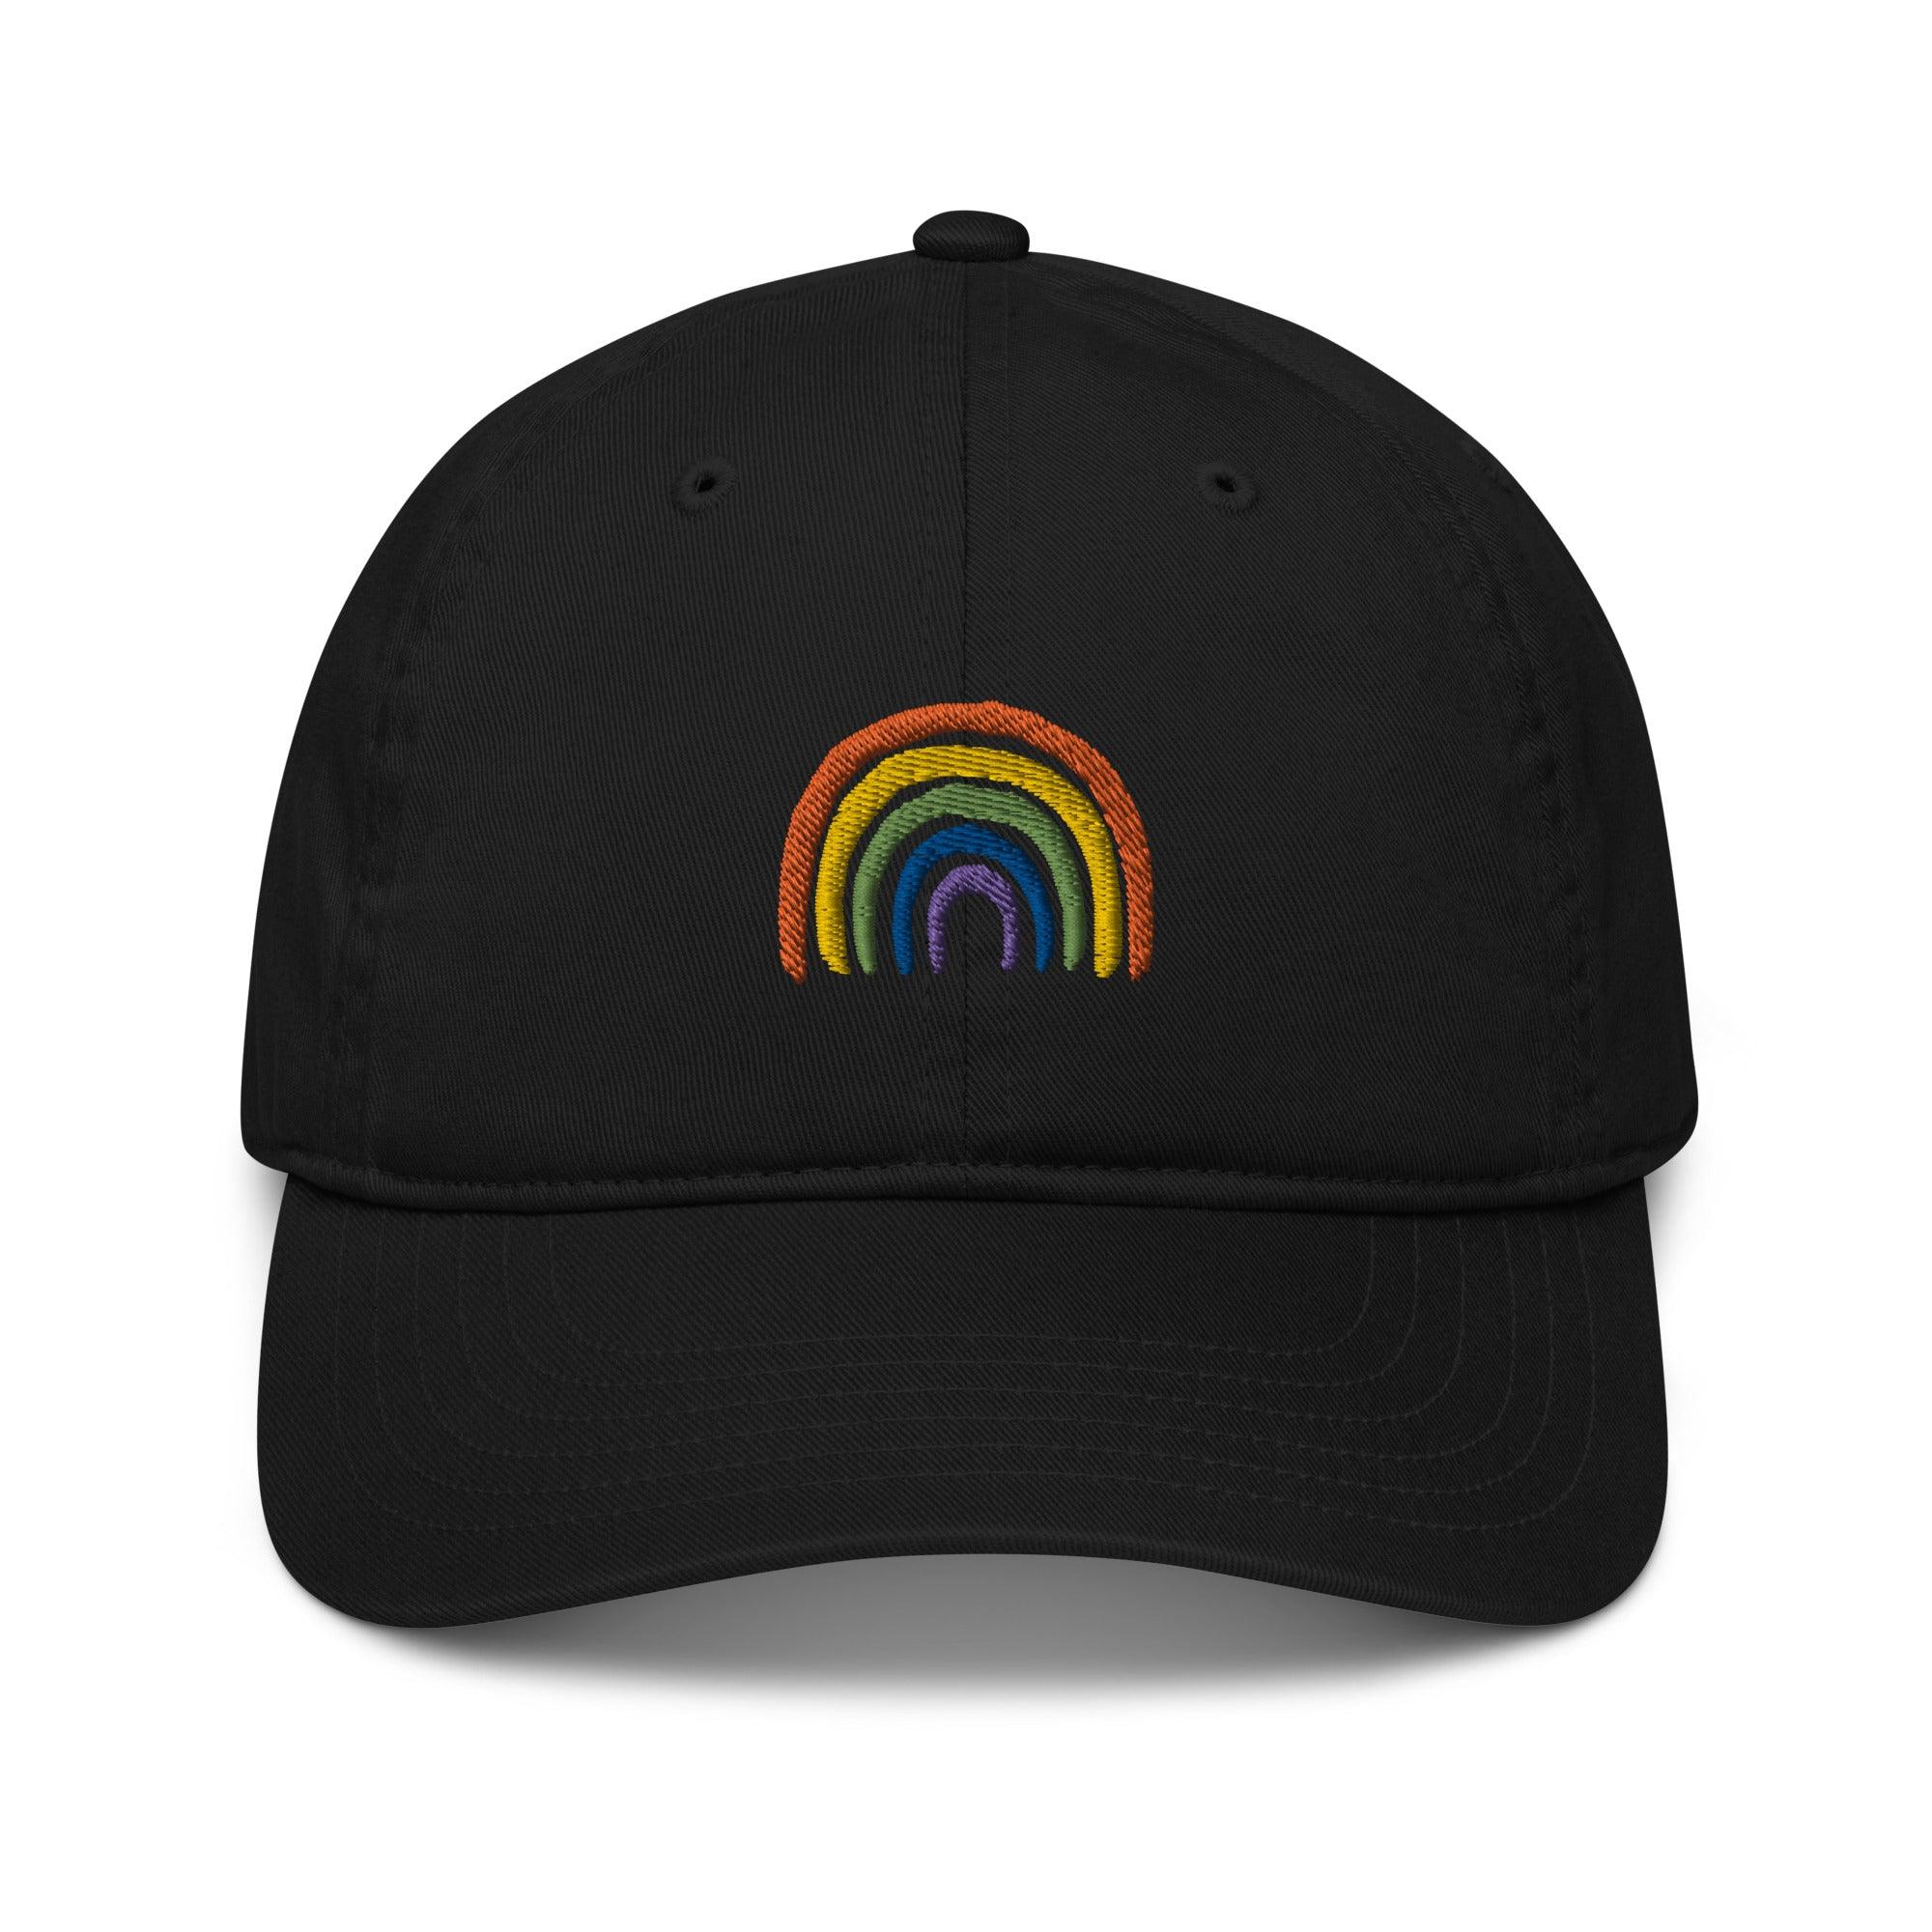 Rainbow Baseball Cap product